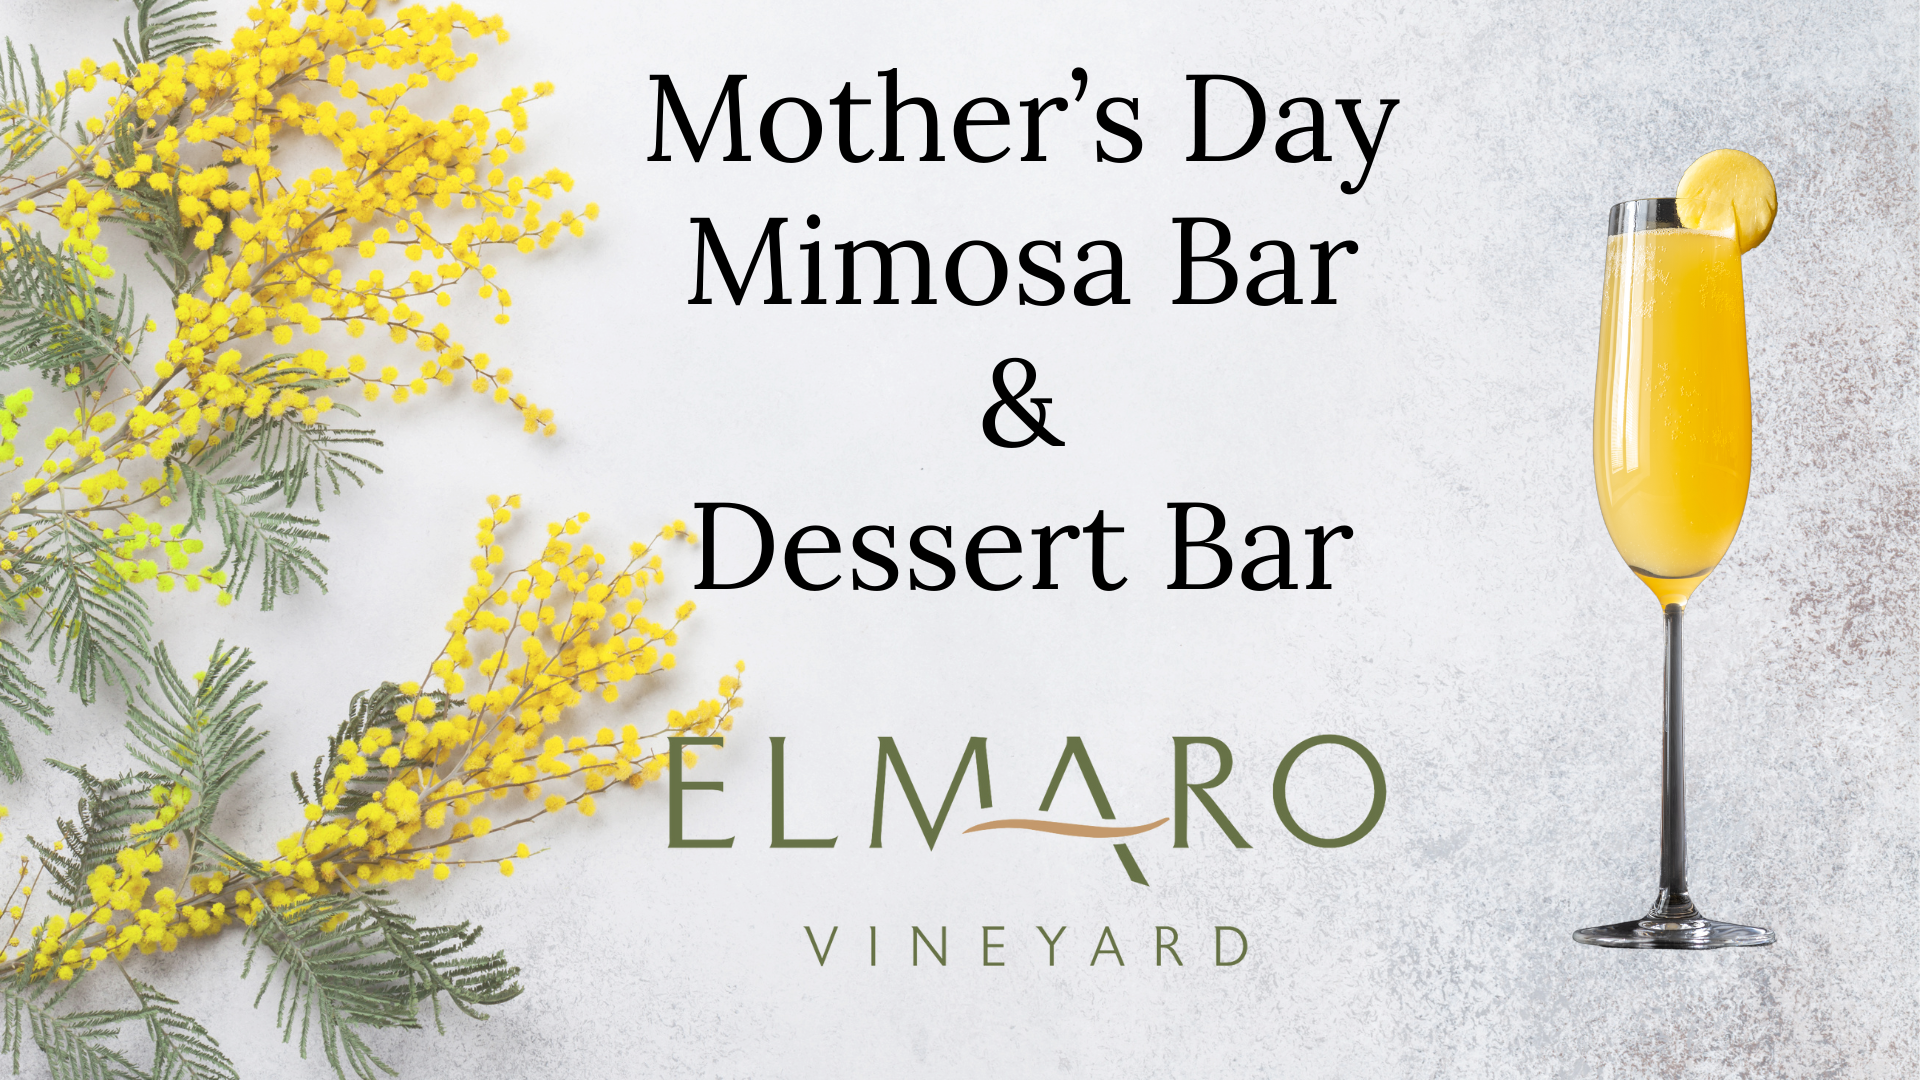 Mother’s Day Mimosa Bar & Dessert Bar